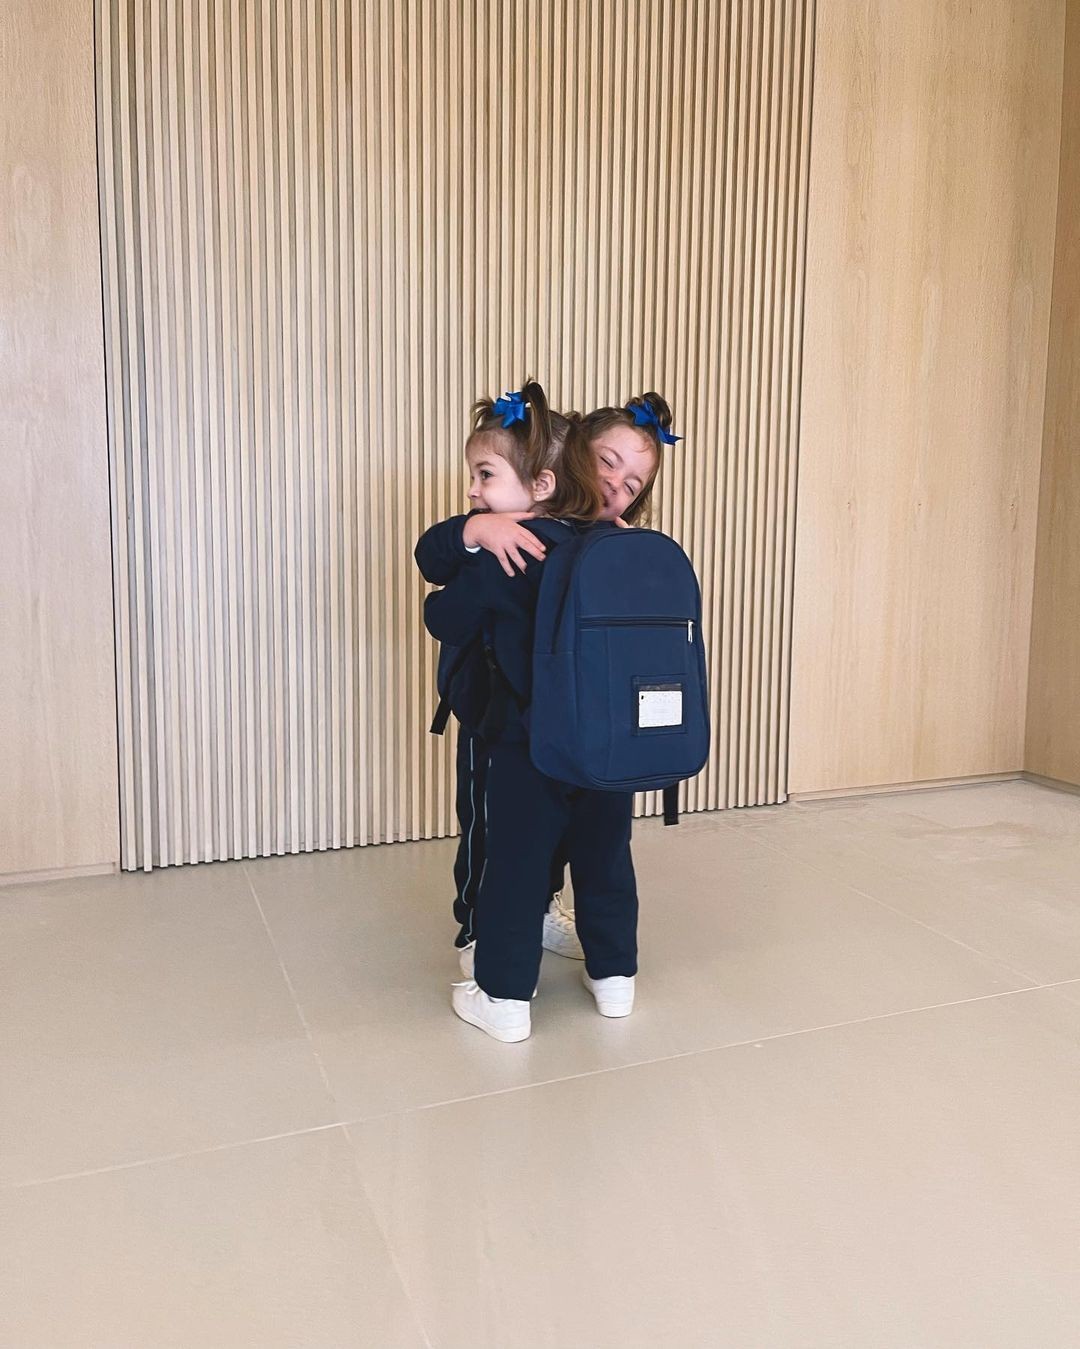 Fofura mode on! Fabiana Justus encanta ao mostrar filhas gêmeas na volta às aulas (Foto: Reprodução/Instagram)